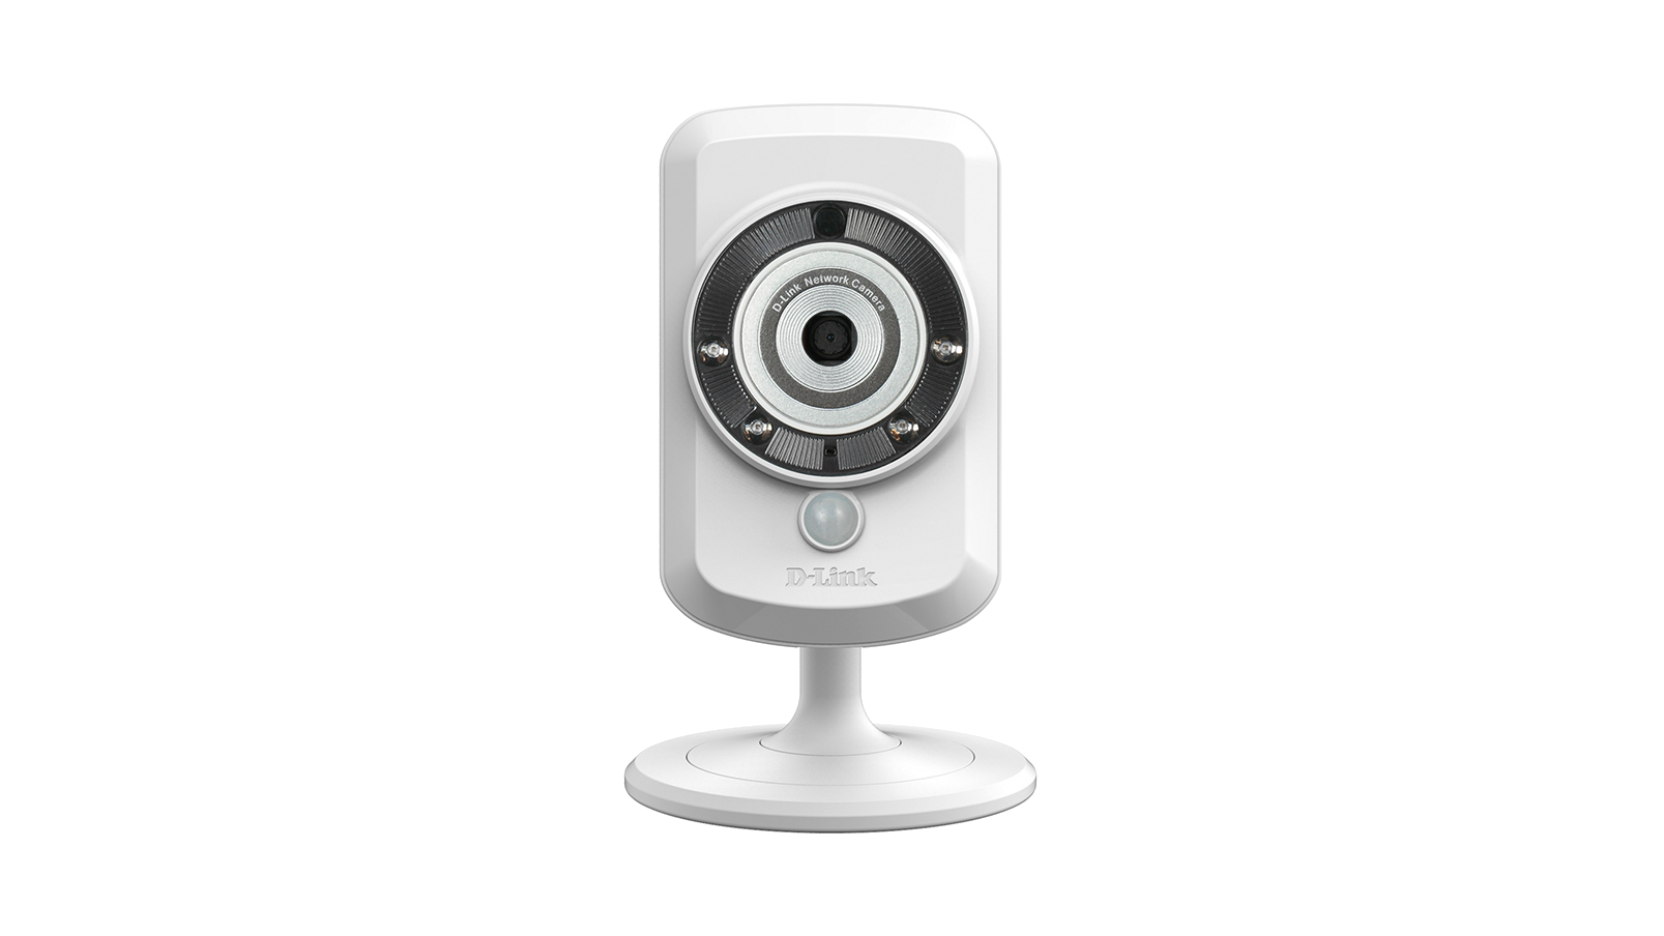 D link webcam installation software free download